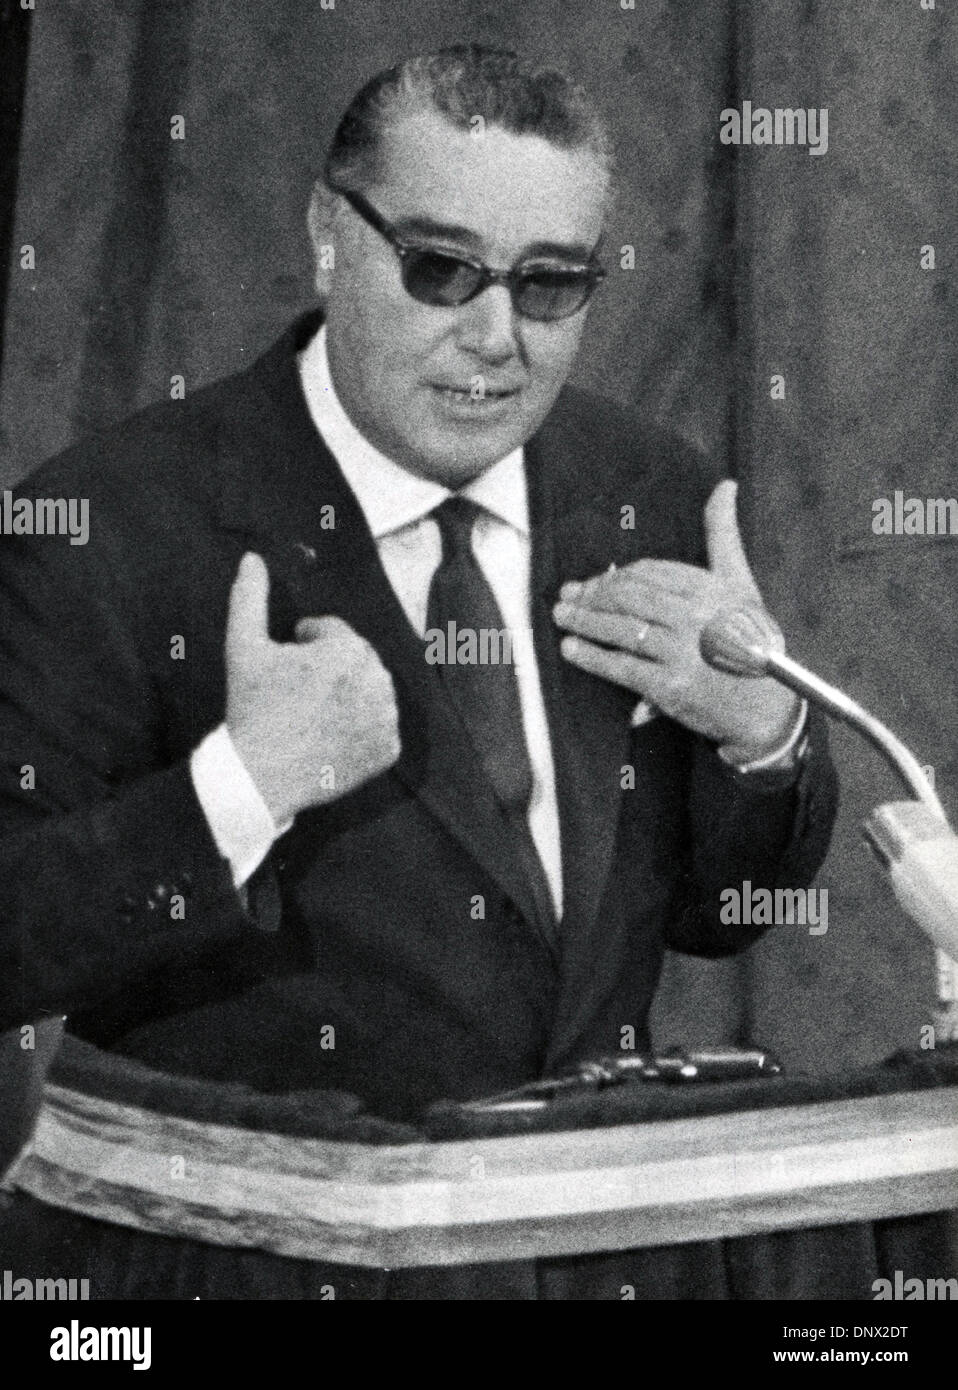 02 ago 1963 - Roma, Italia - ARTURO MICHELINI parla alla VII Assemblea del nuovo partito fascista presso il Palazzo dei Congressi. (Credito Immagine: © Keystone foto/ZUMAPRESS.com) Foto Stock